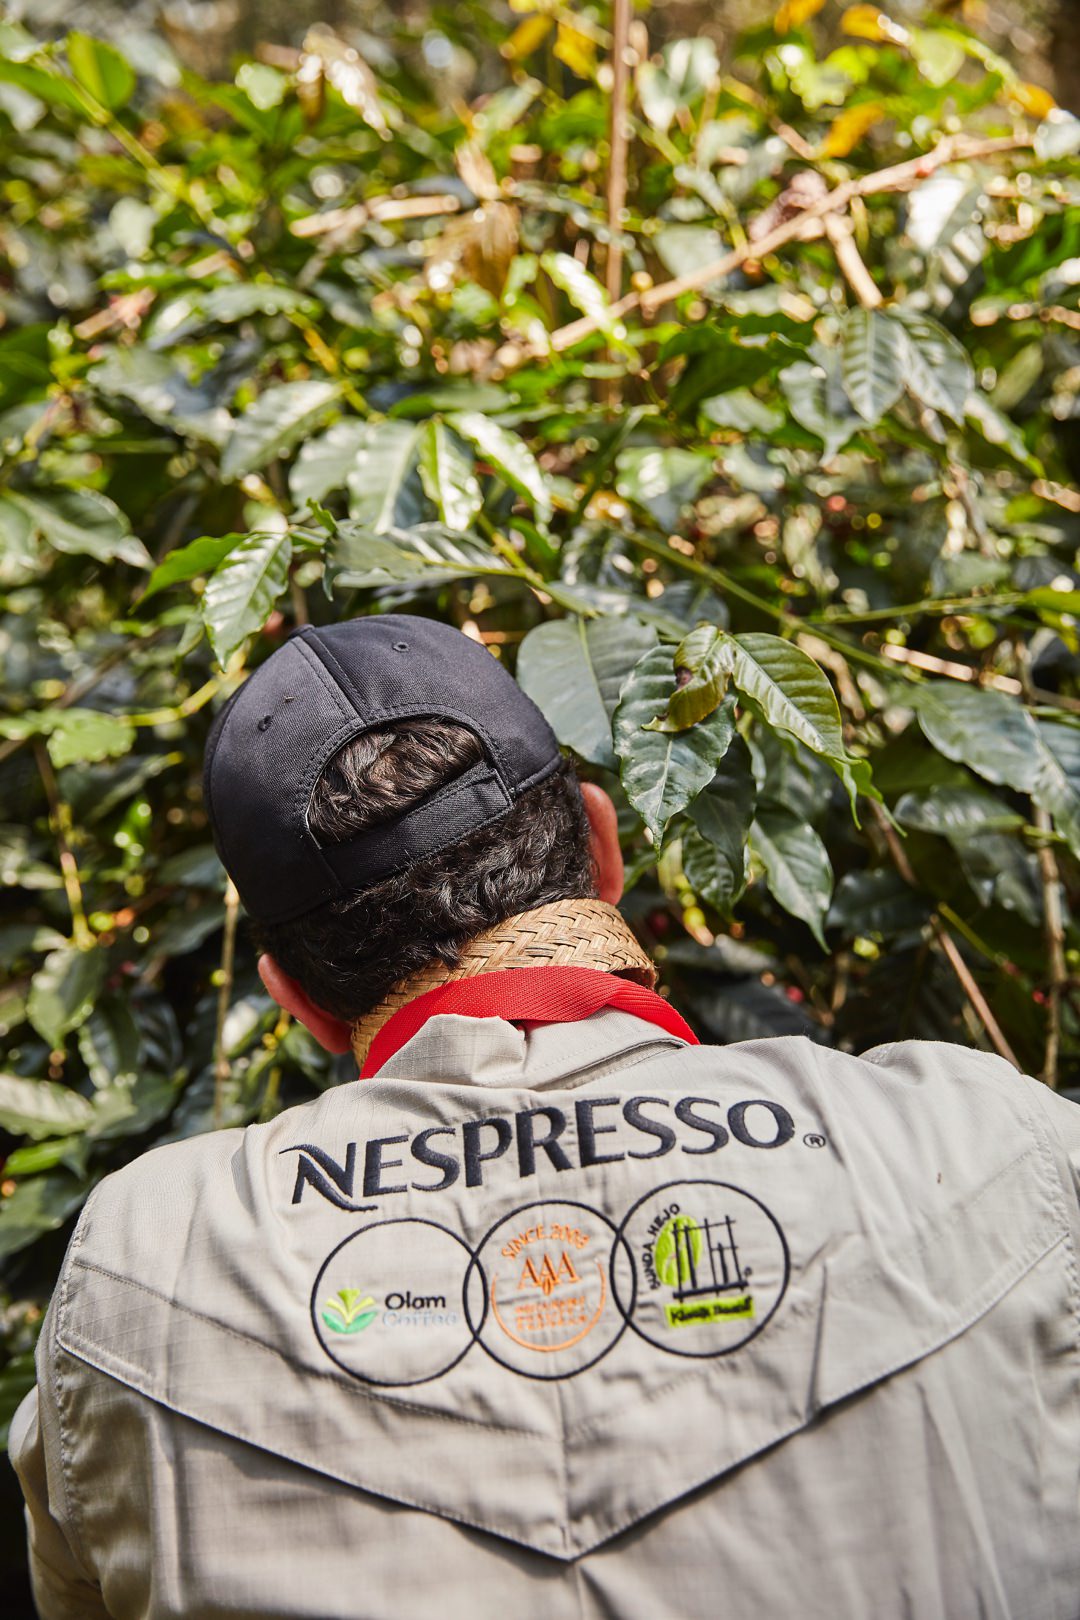 Koffieboer oogst duurzame koffie dankzij het AAA Sustainable Quality™ programma van Nespresso